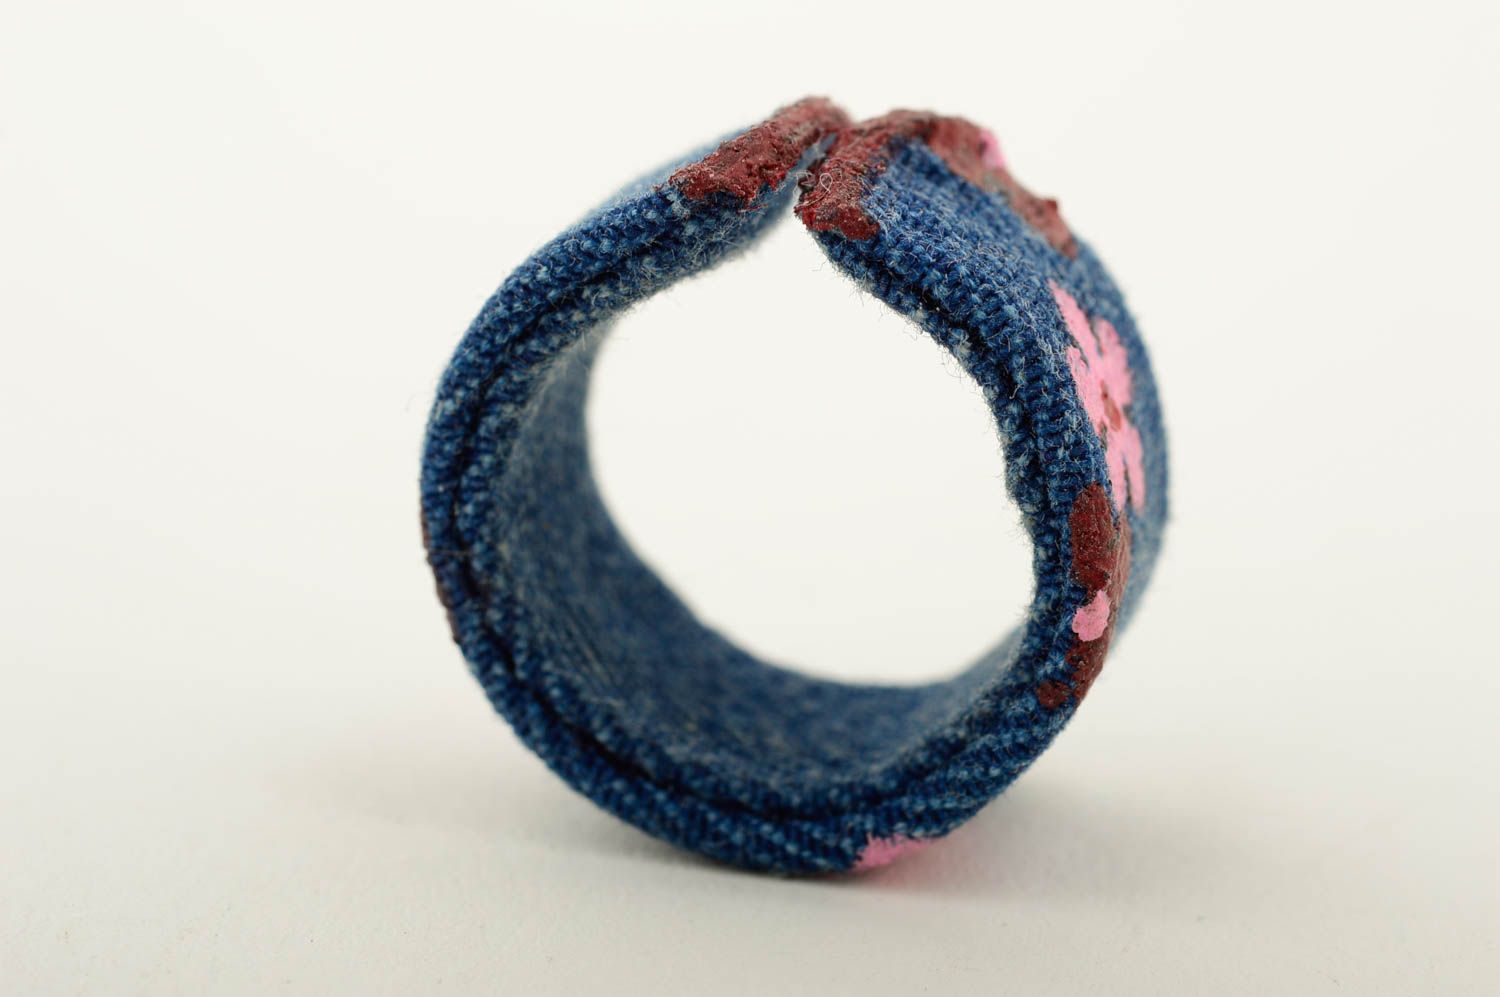 Unusual handmade fabric ring artisan jewelry designs denim ring for girls photo 5